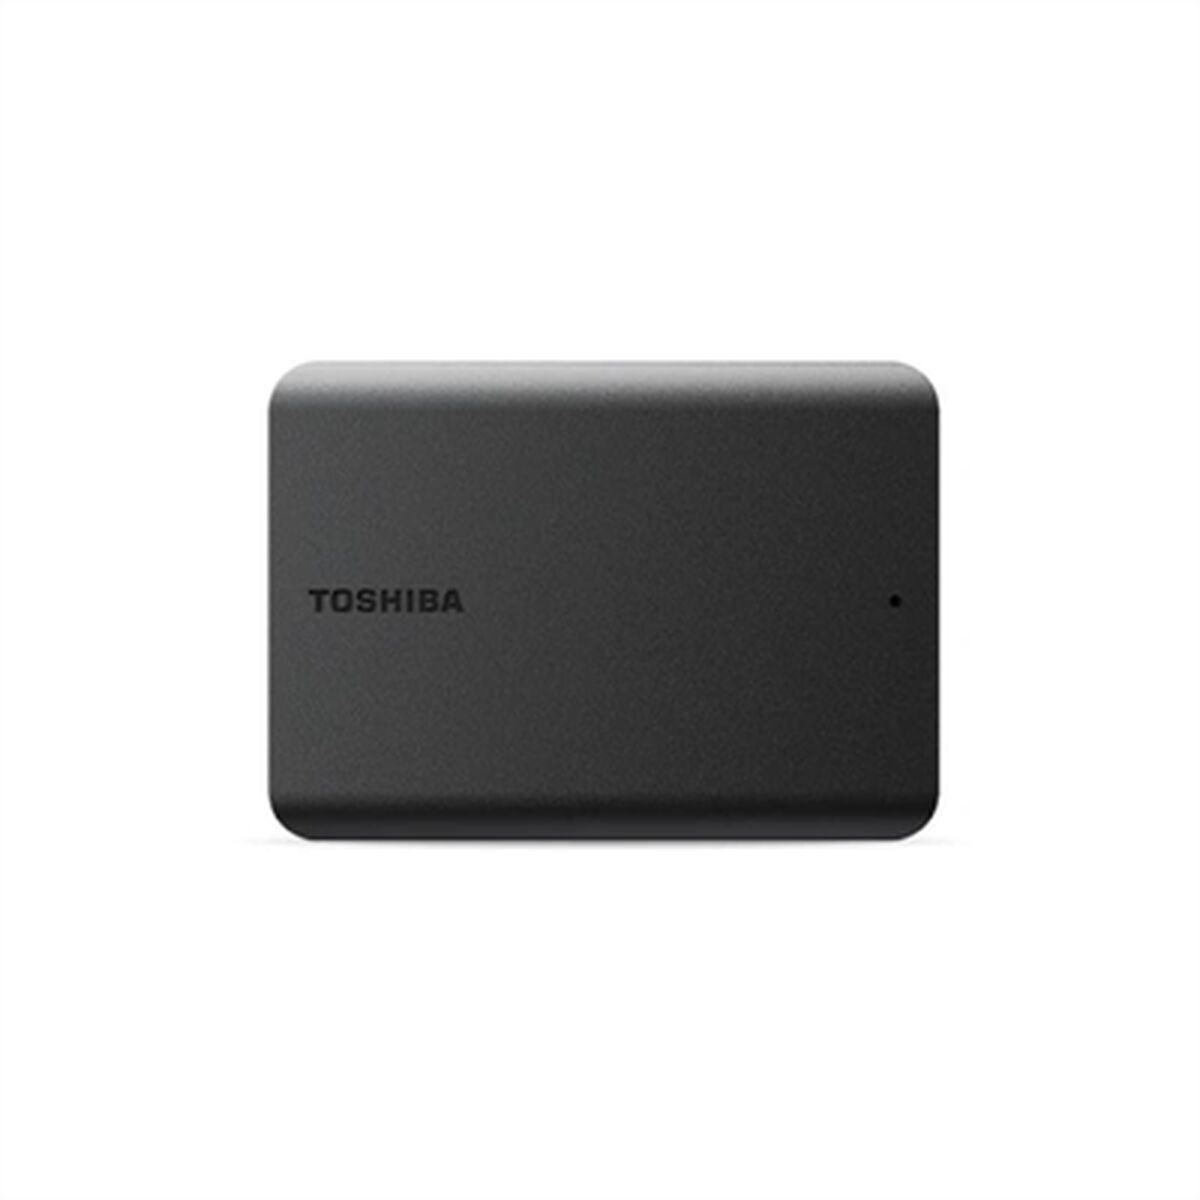 Toshiba Disco Duro Externo Toshiba Hdtb520ek3aa Negro 2 Tb